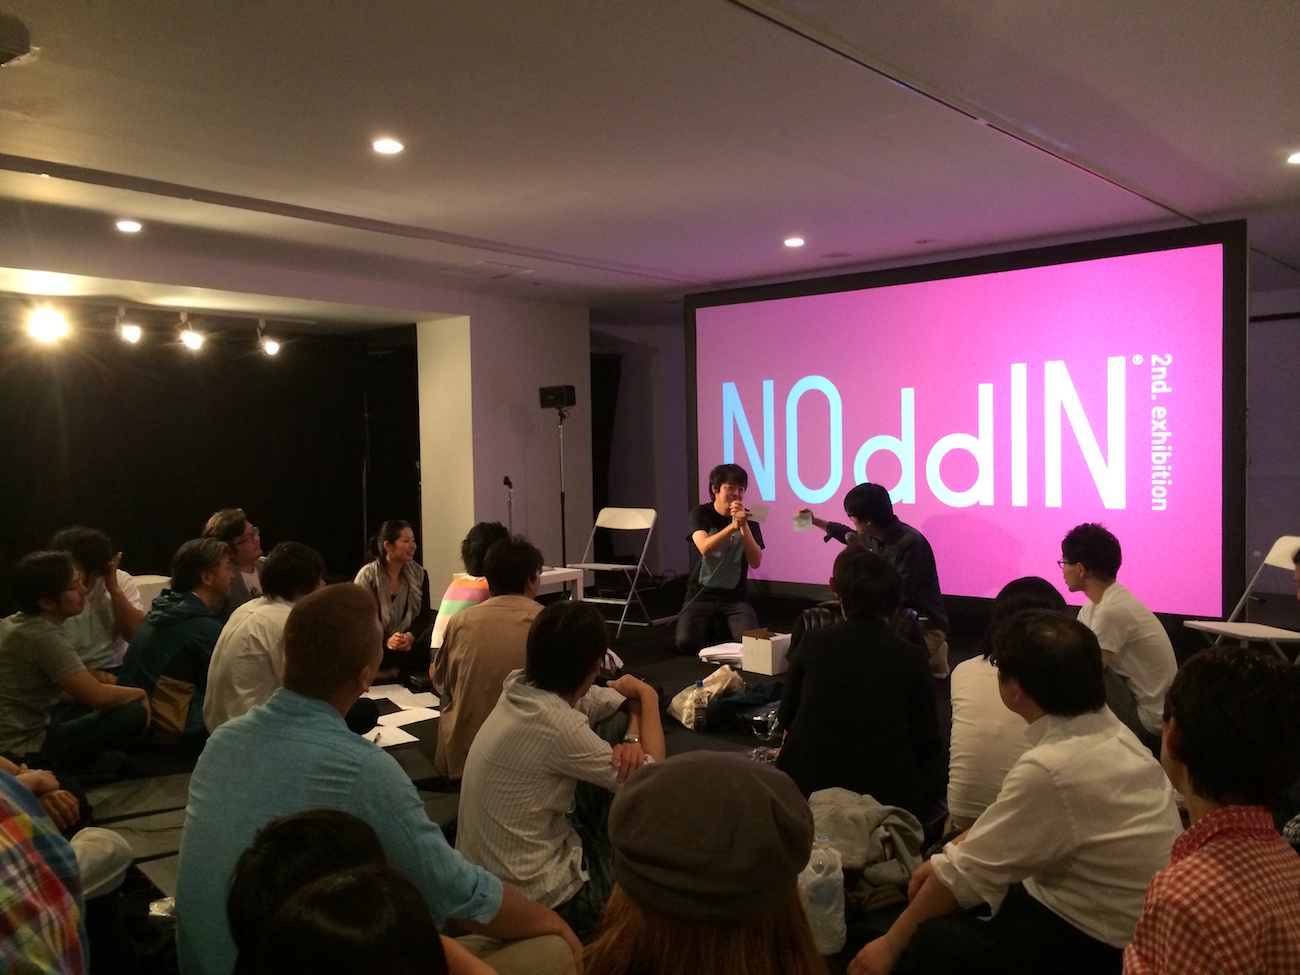 2014年に開催されたNOddIN 2nd Exhibitionでのワークショップ。一見無関係な言葉と言葉を組み合わせることで、新しい視点が見えてくる。言葉の面白さや力を体験する時間を提供した。